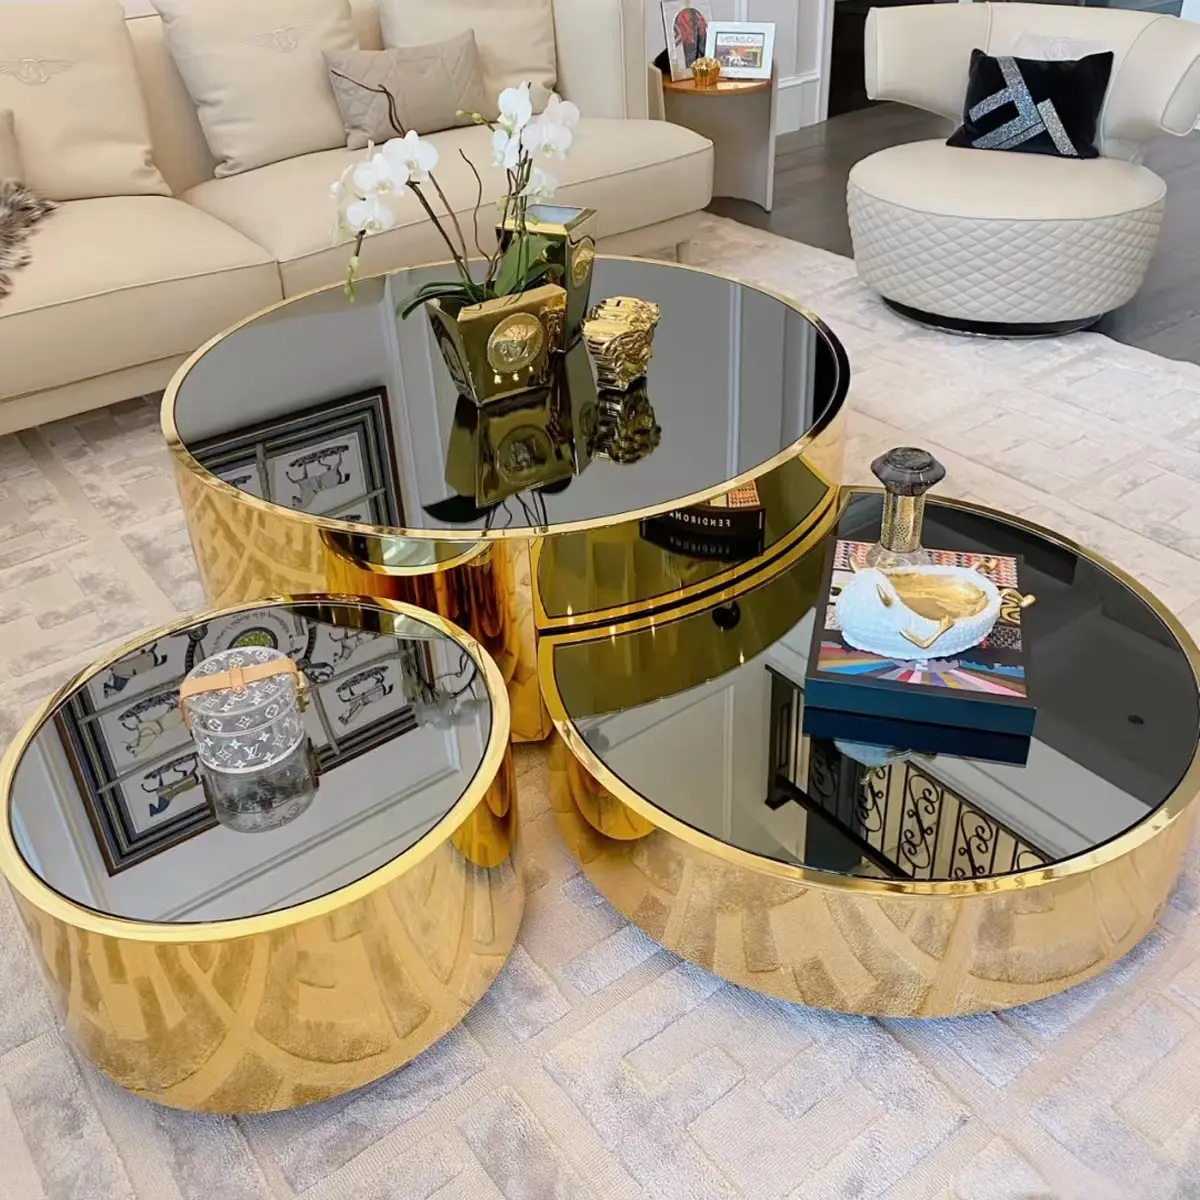 Venta caliente muebles de sala de estar juegos de mesa central redonda astilla o oro Acero inoxidable lujo espejo tres mesas de centro